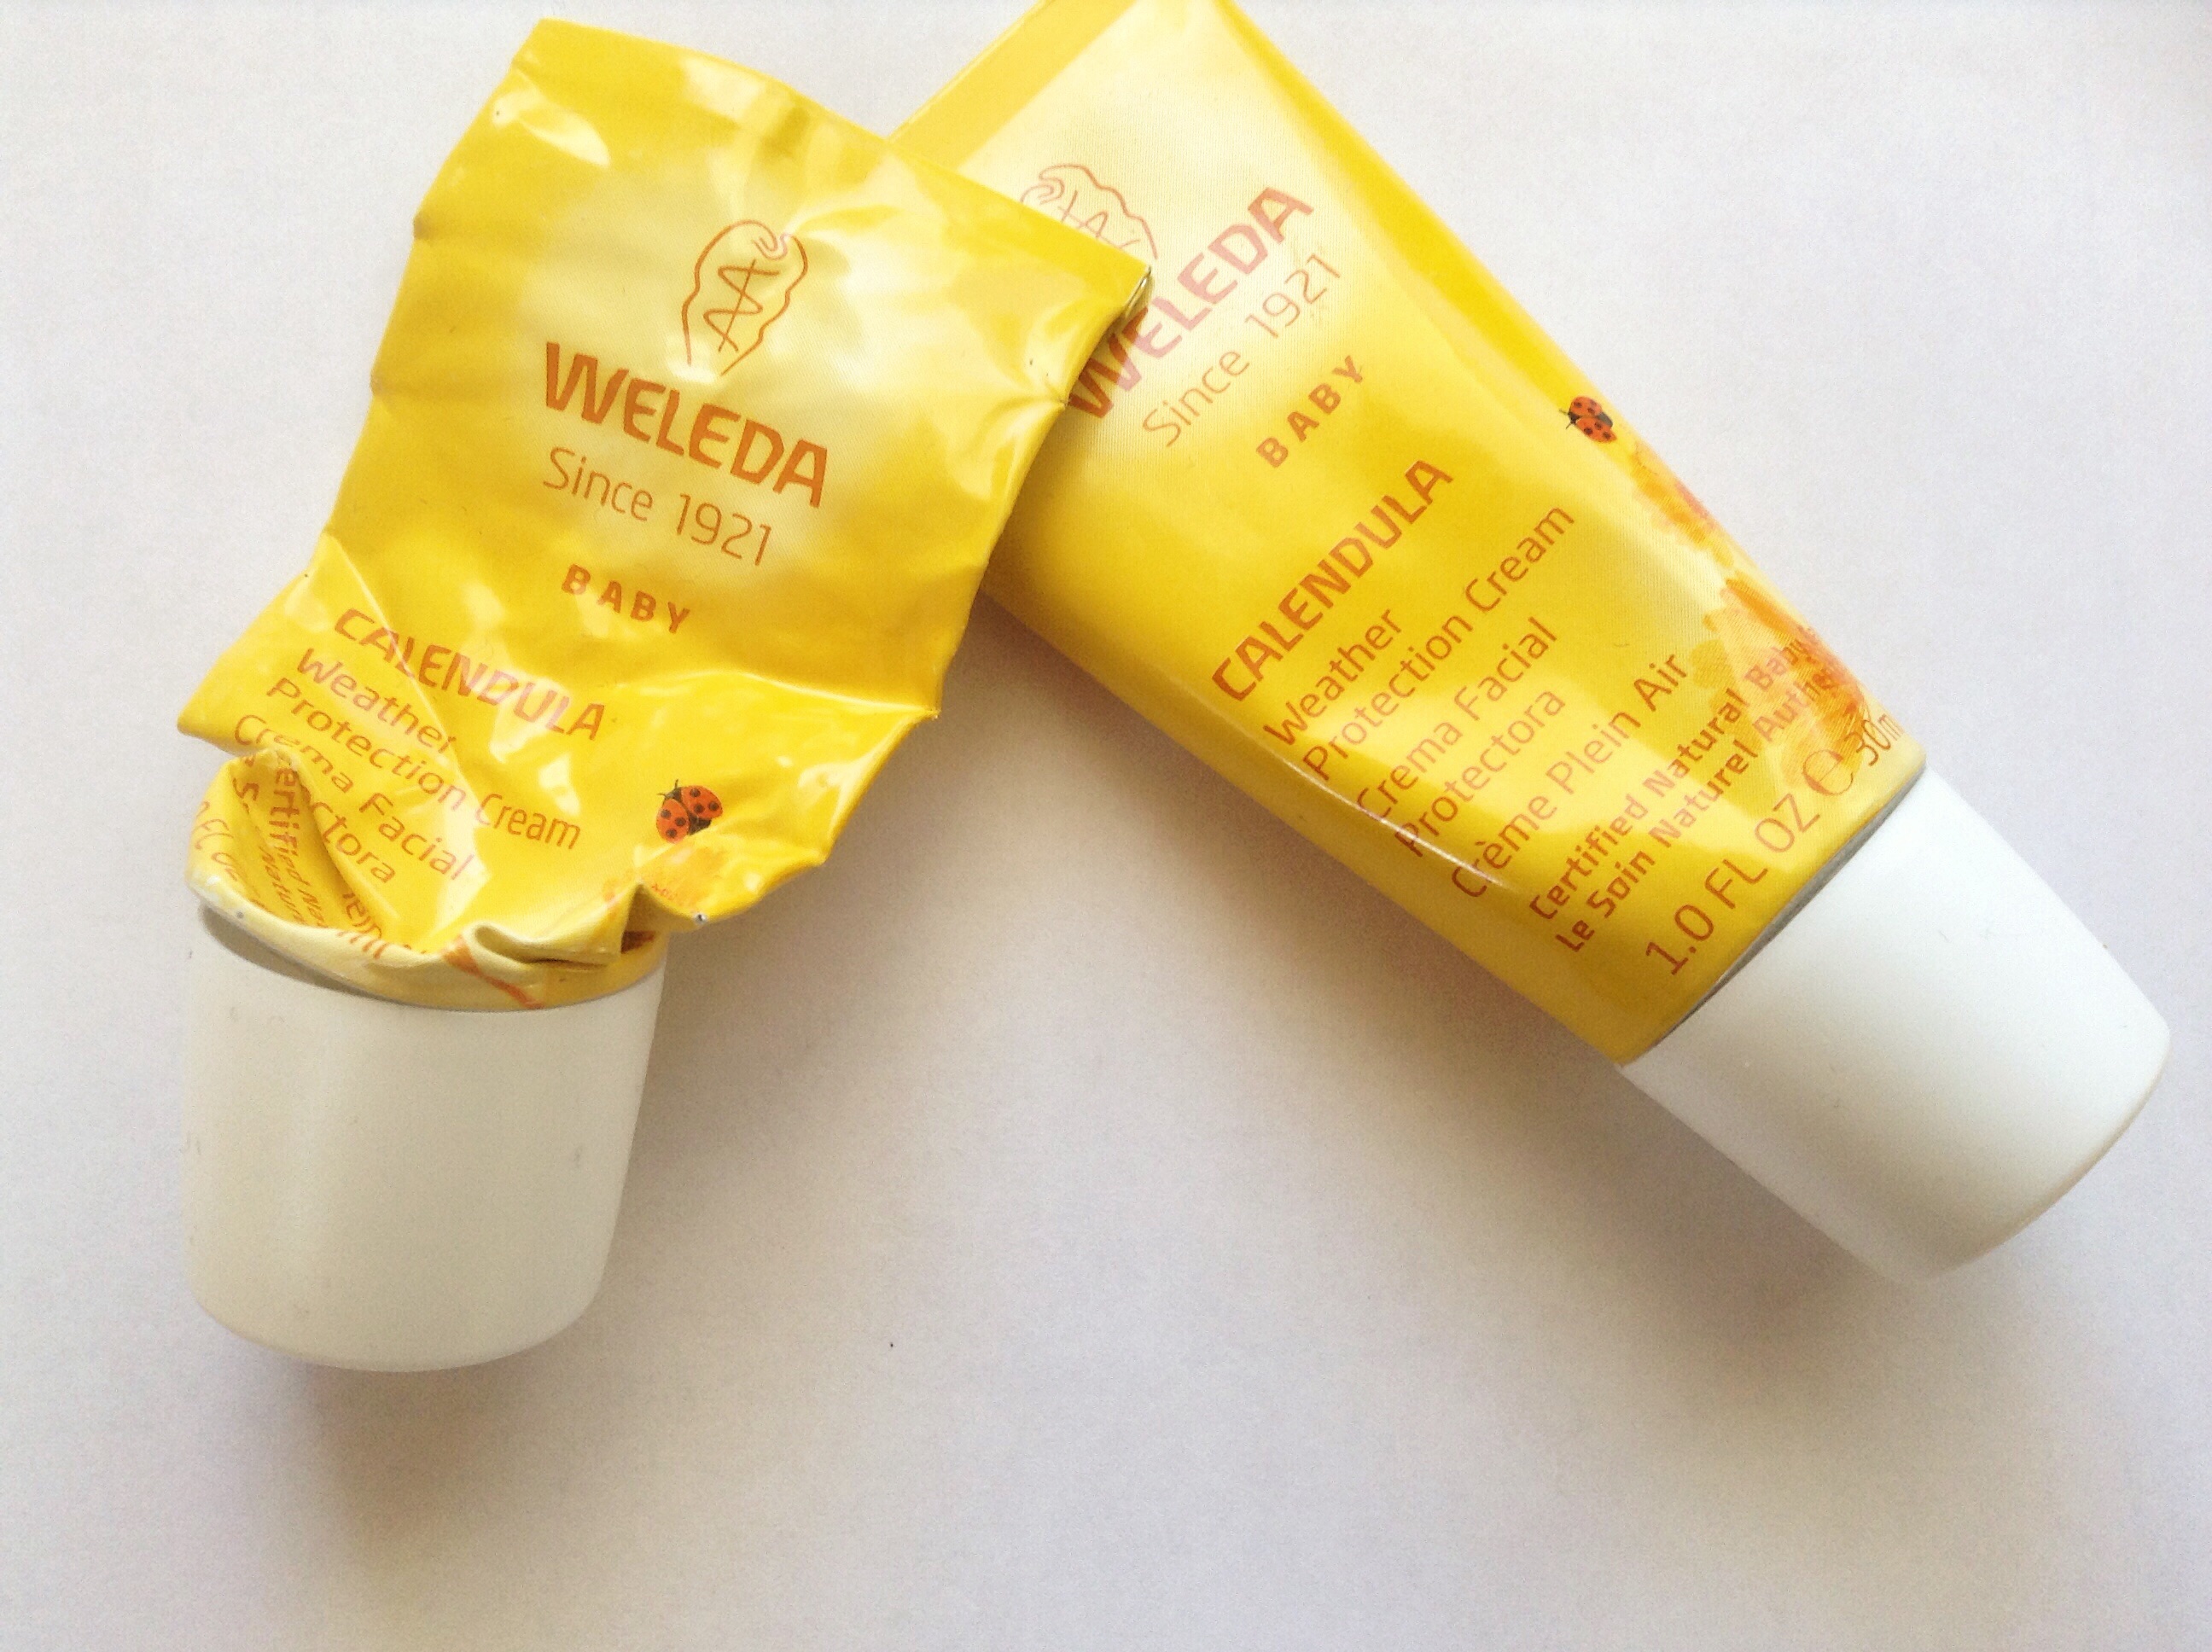 weleda weather protection cream